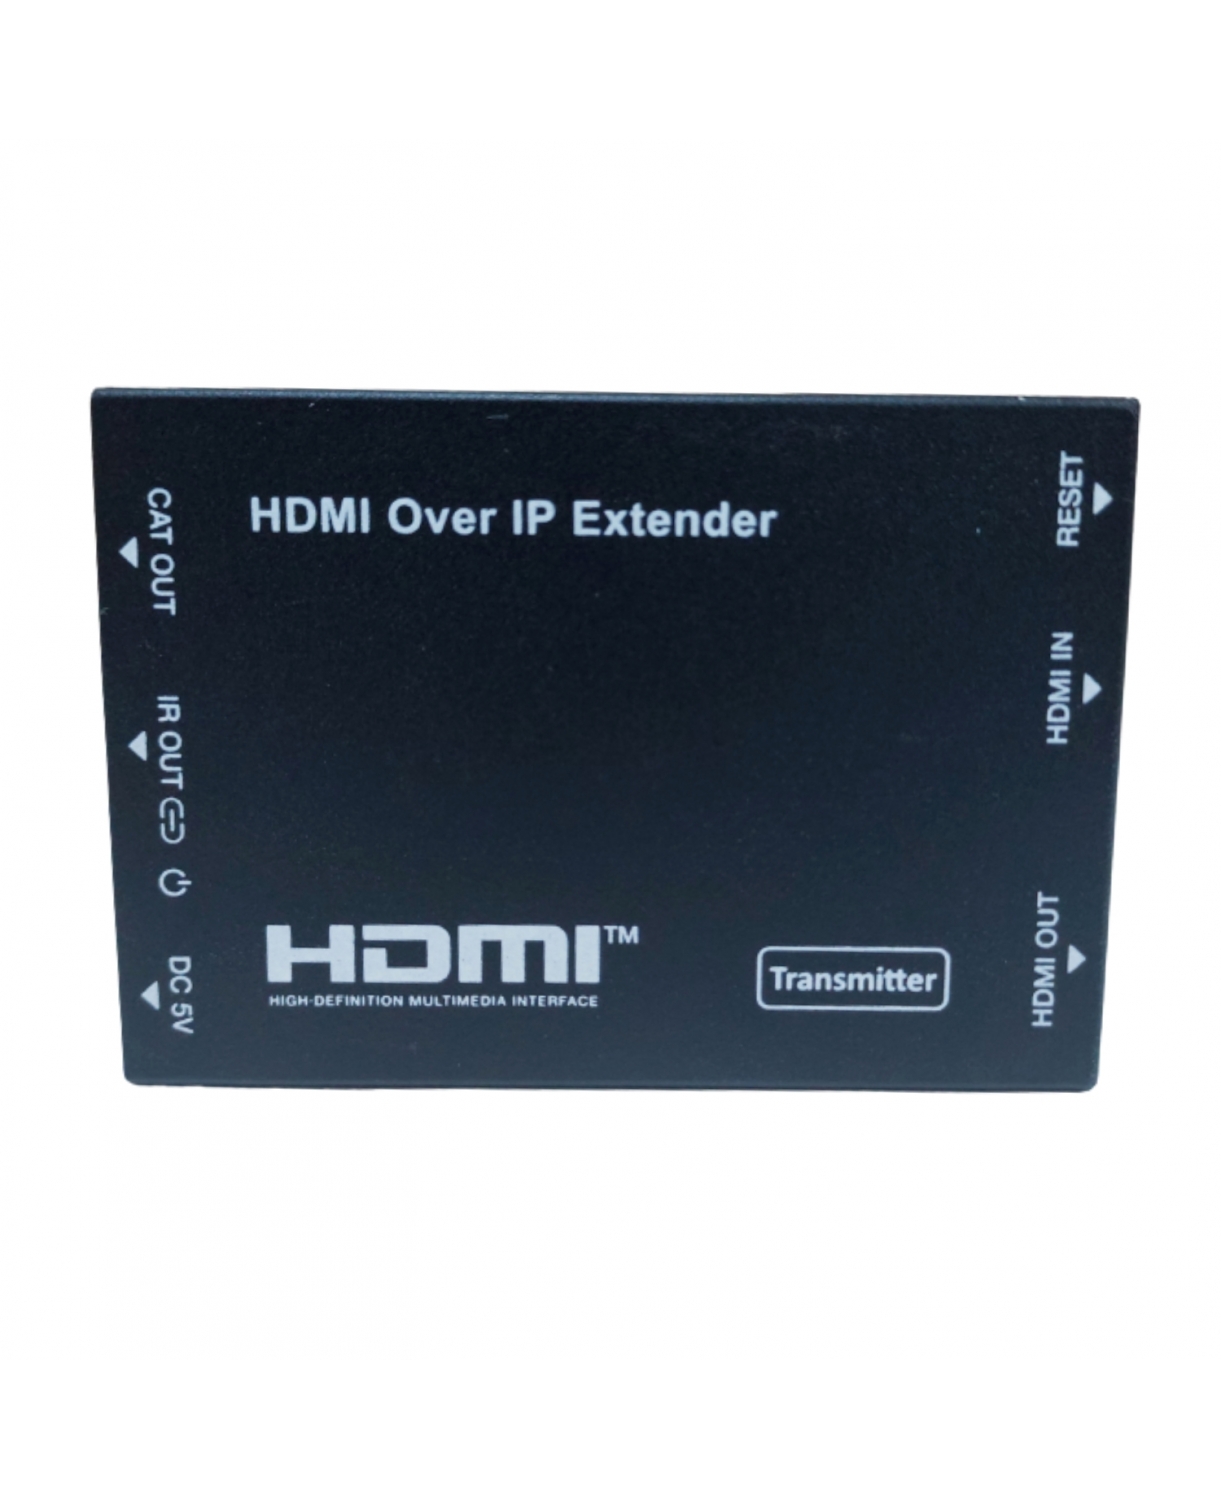 TRASMISSOR DE HDMI VIA IP ESPO - 150M